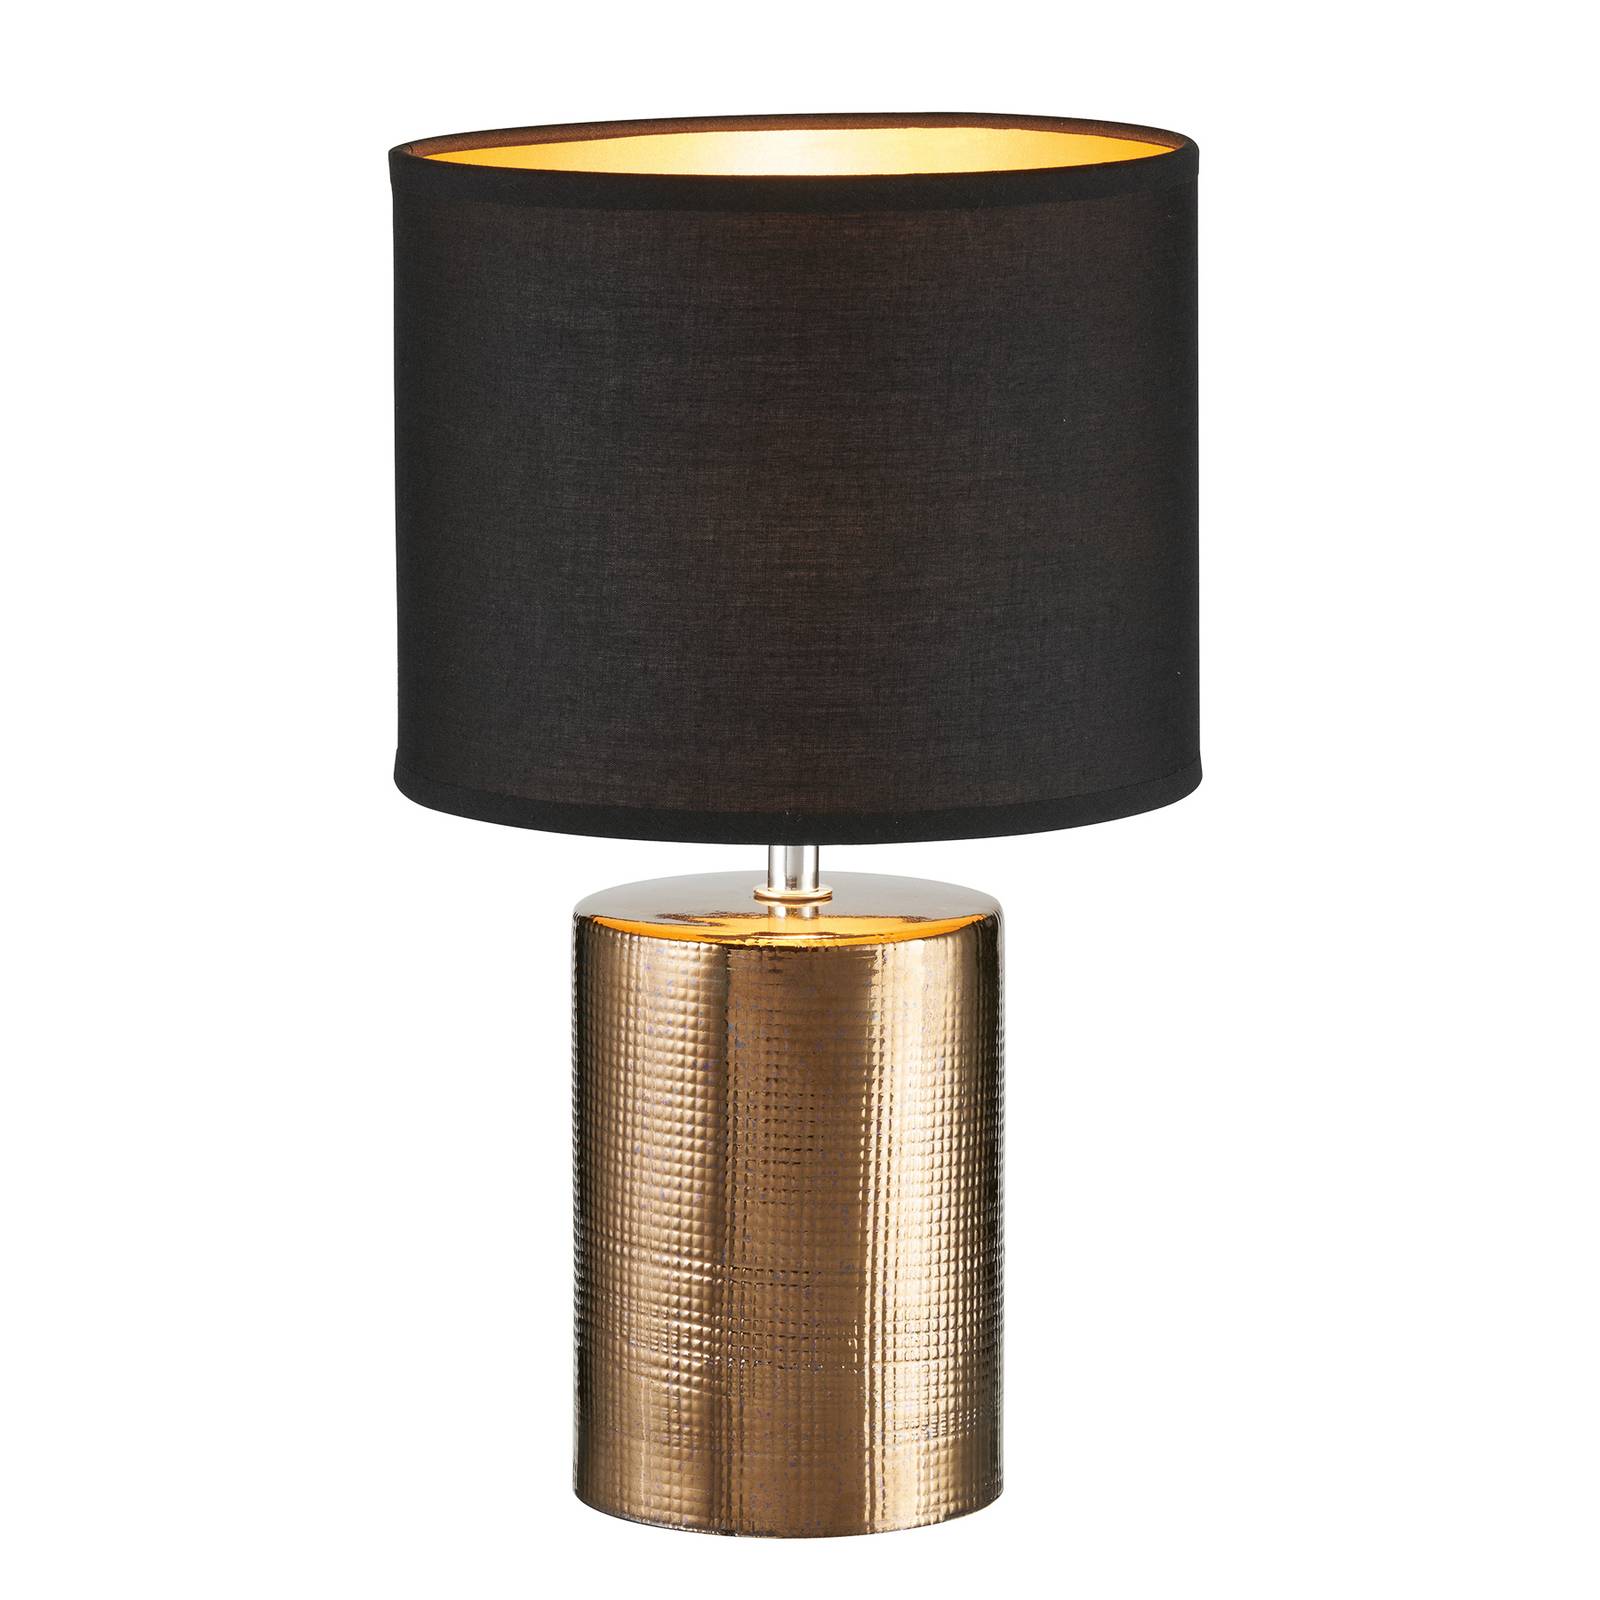 E-shop Stolová lampa Bronz, valcovitá, čierna/bronzová